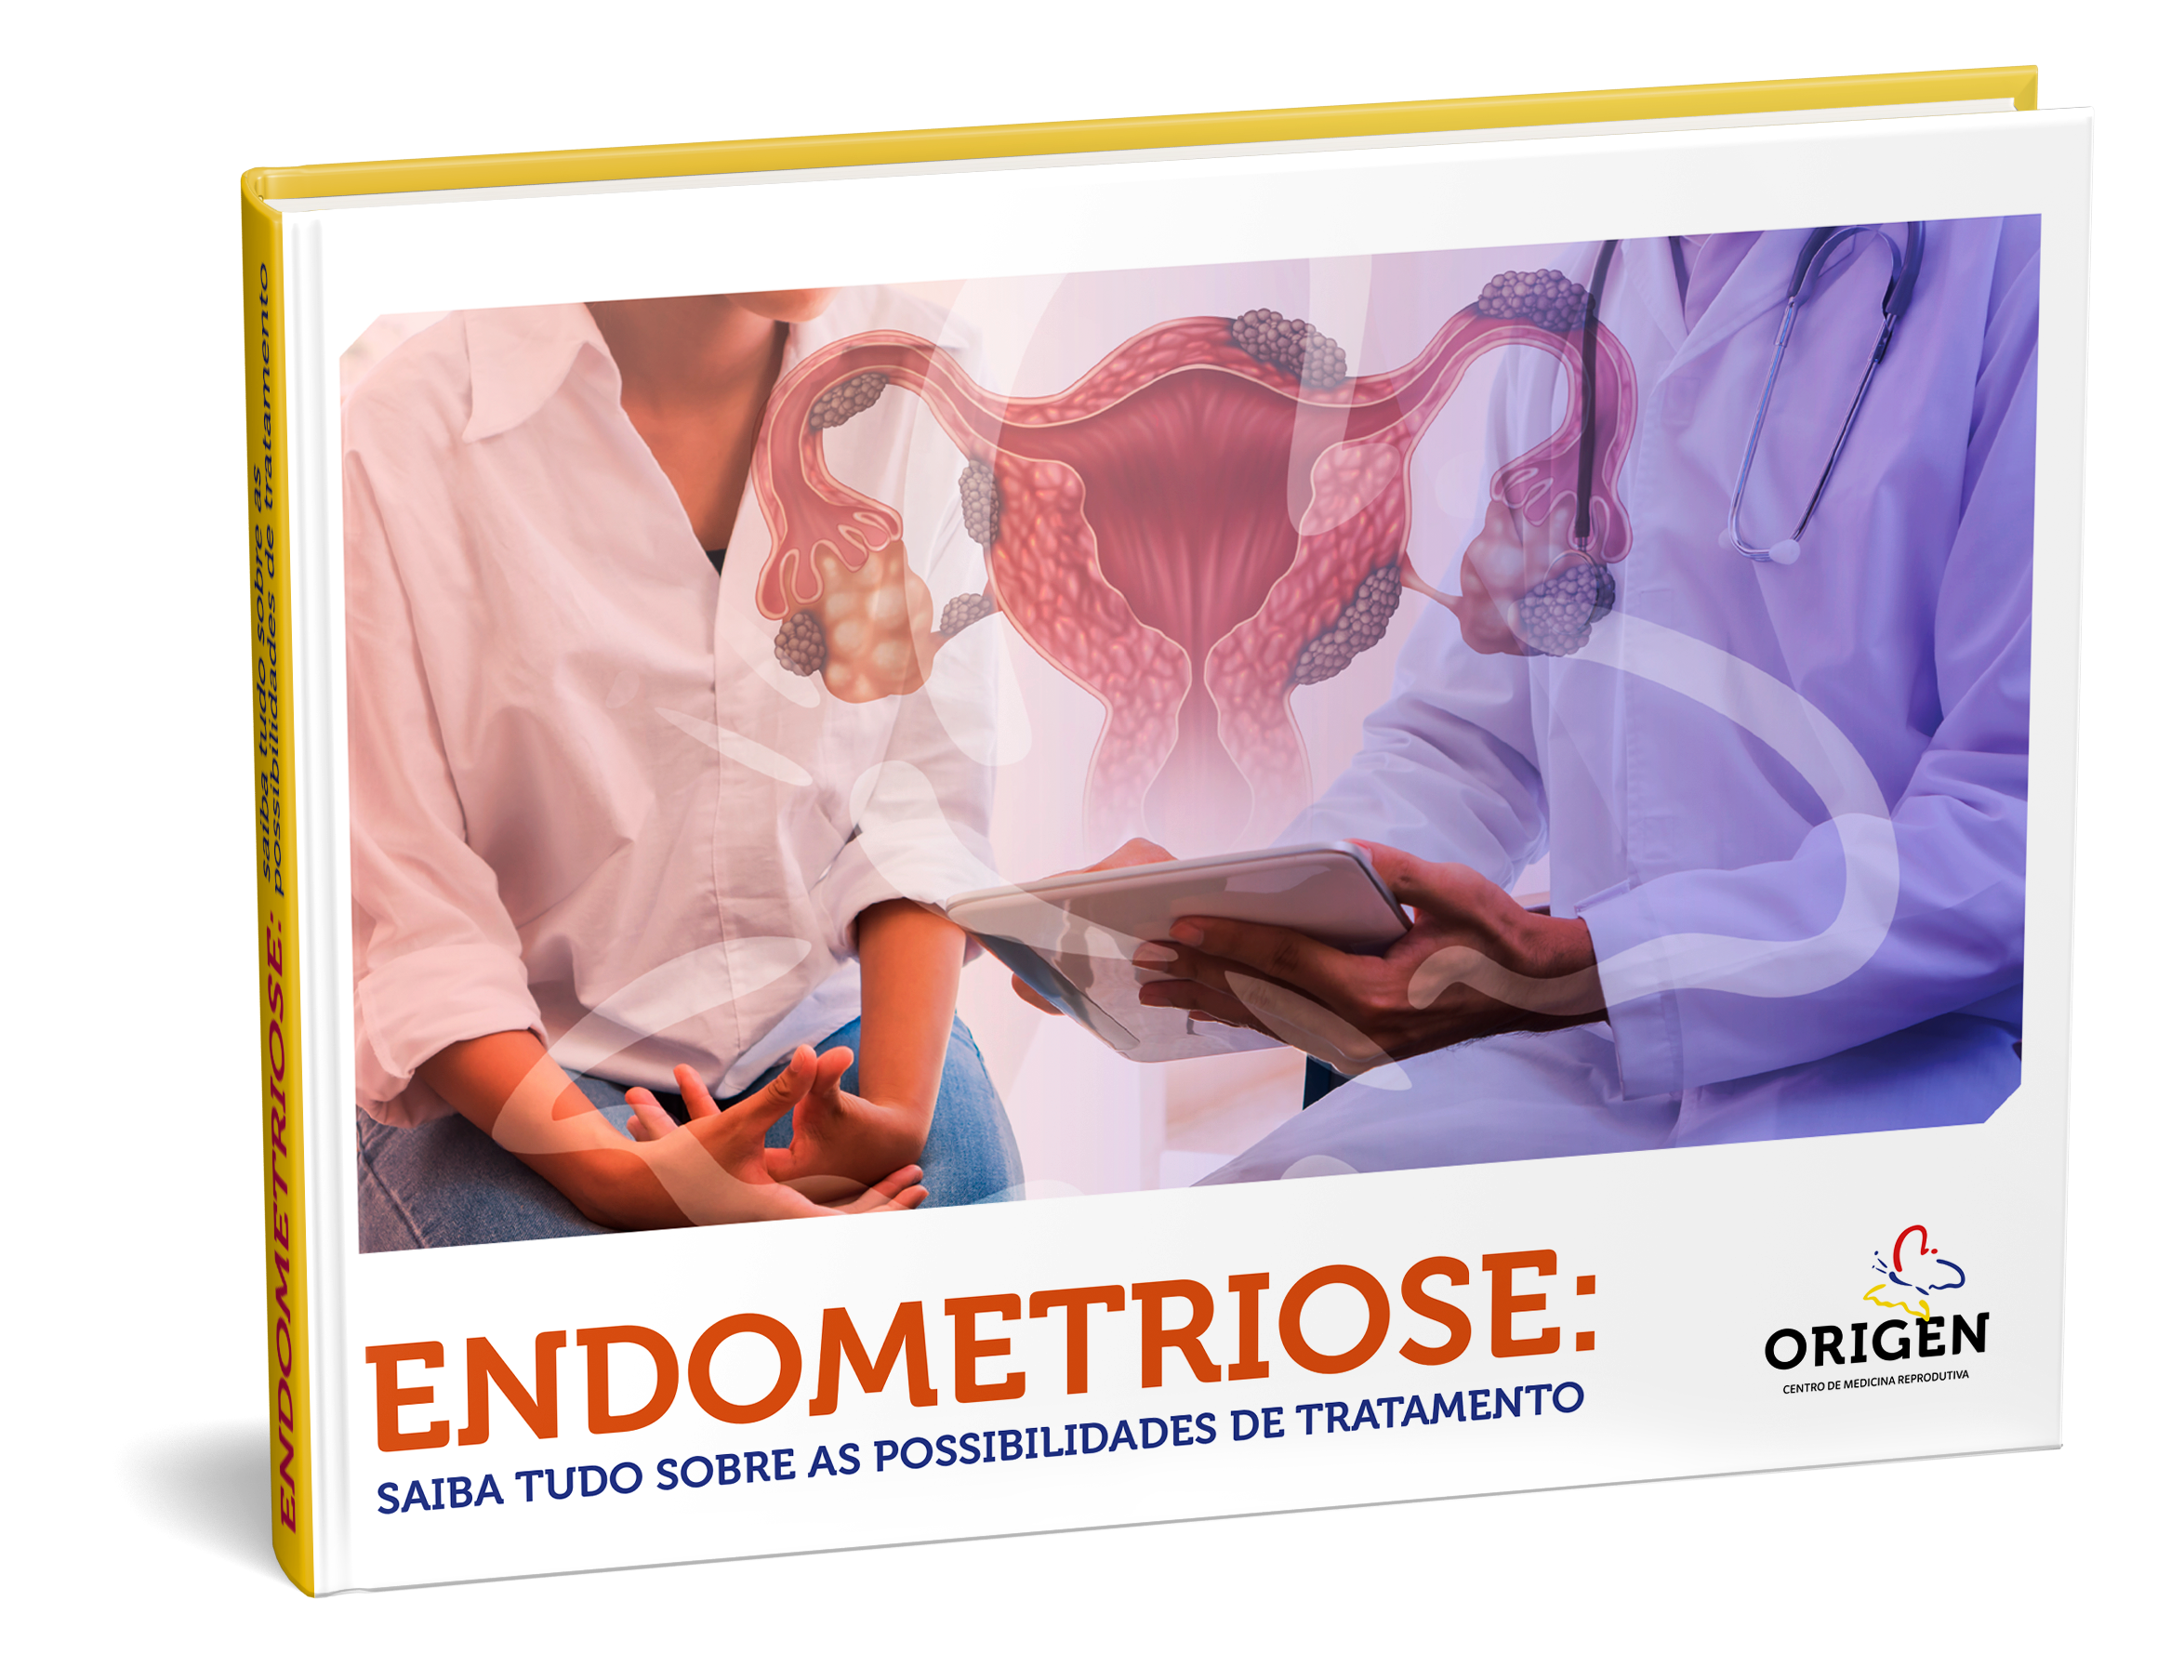 Endometriose: saiba tudo sobre as possibilidades de tratamento